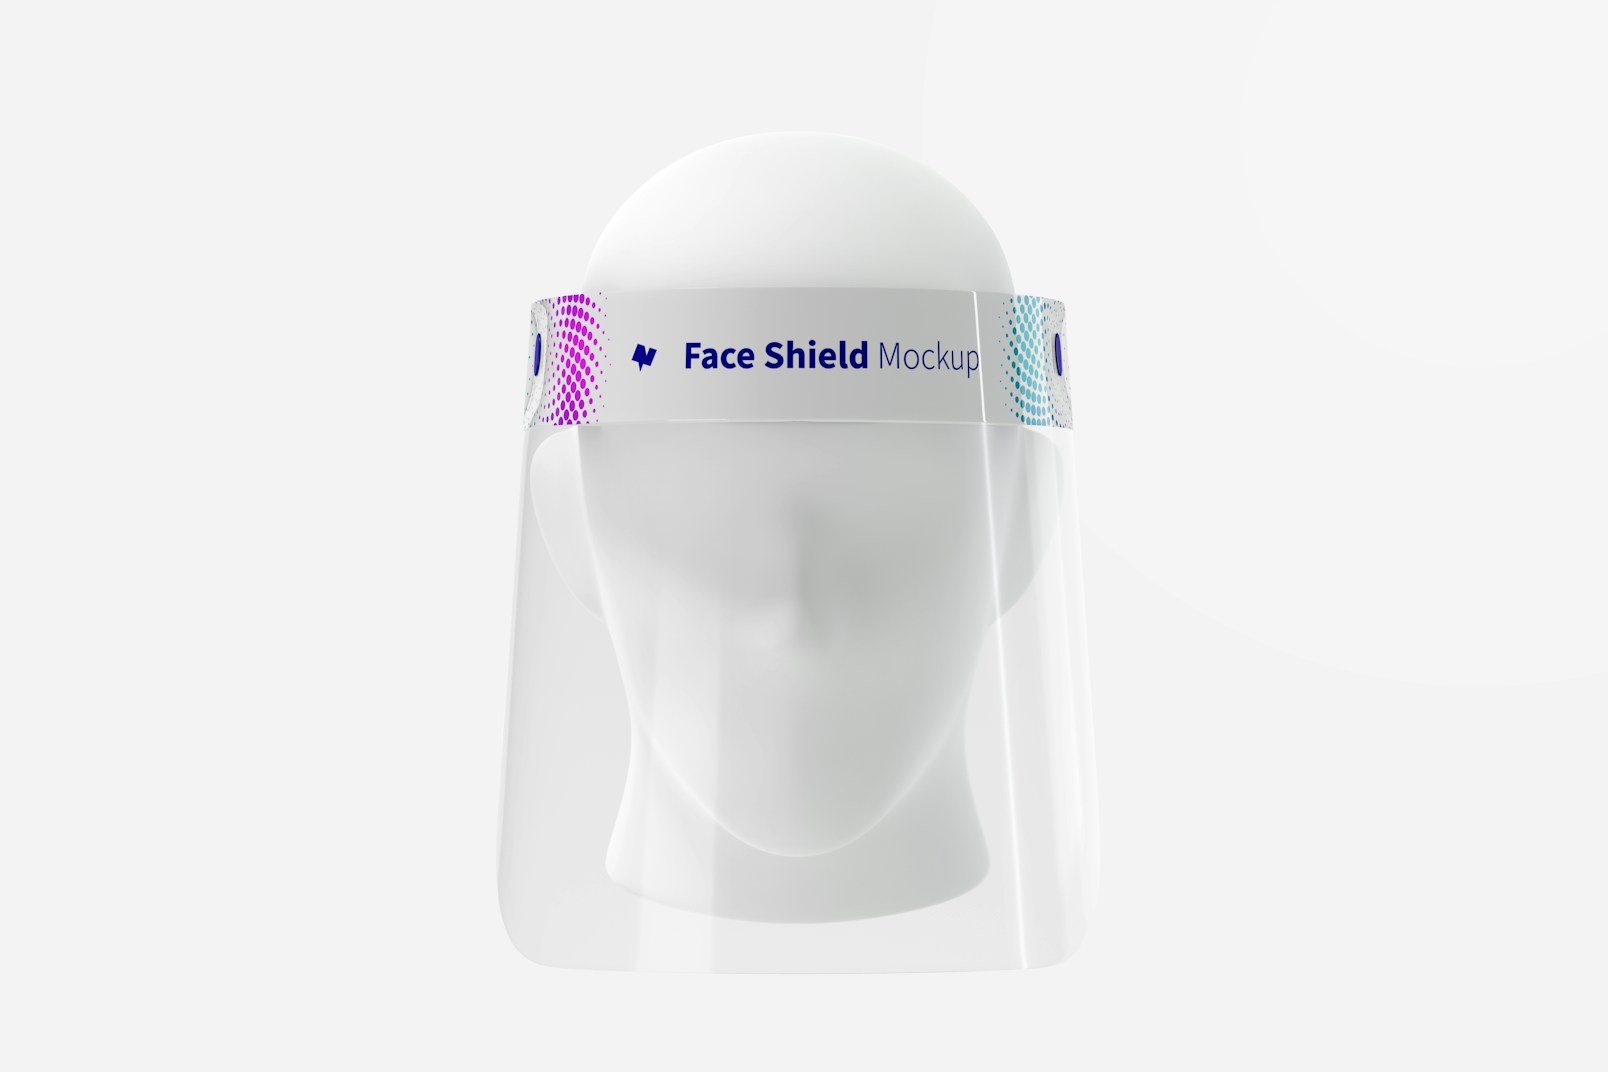 Maqueta de Protector Facial con Cabeza, Vista Frontal